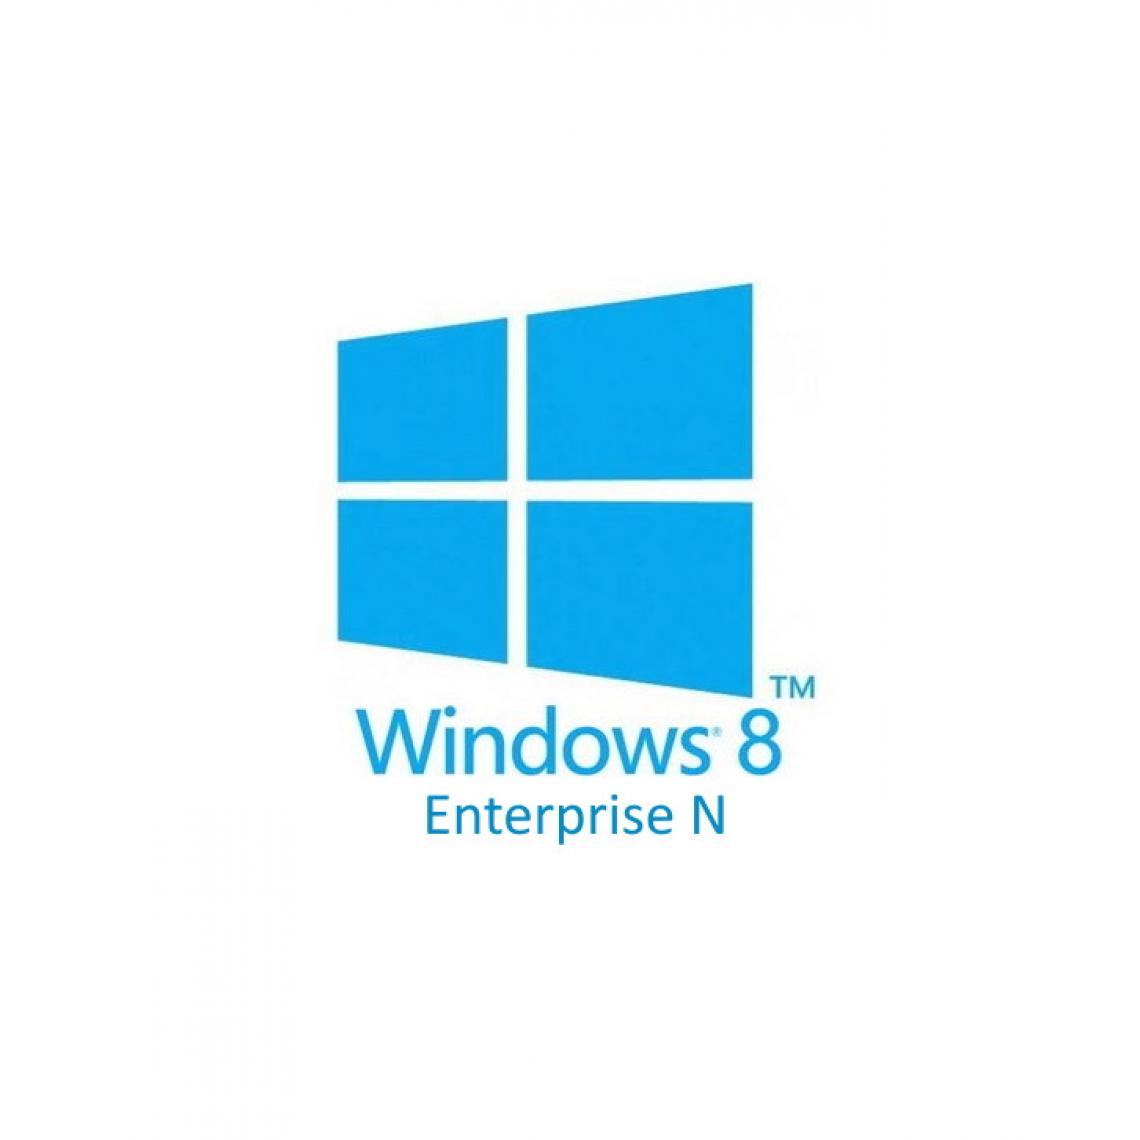 Microsoft - Microsoft Windows 8 Entreprise N (Enterprise N) - Clé licence à télécharger - Livraison rapide 7/7j - Windows 8